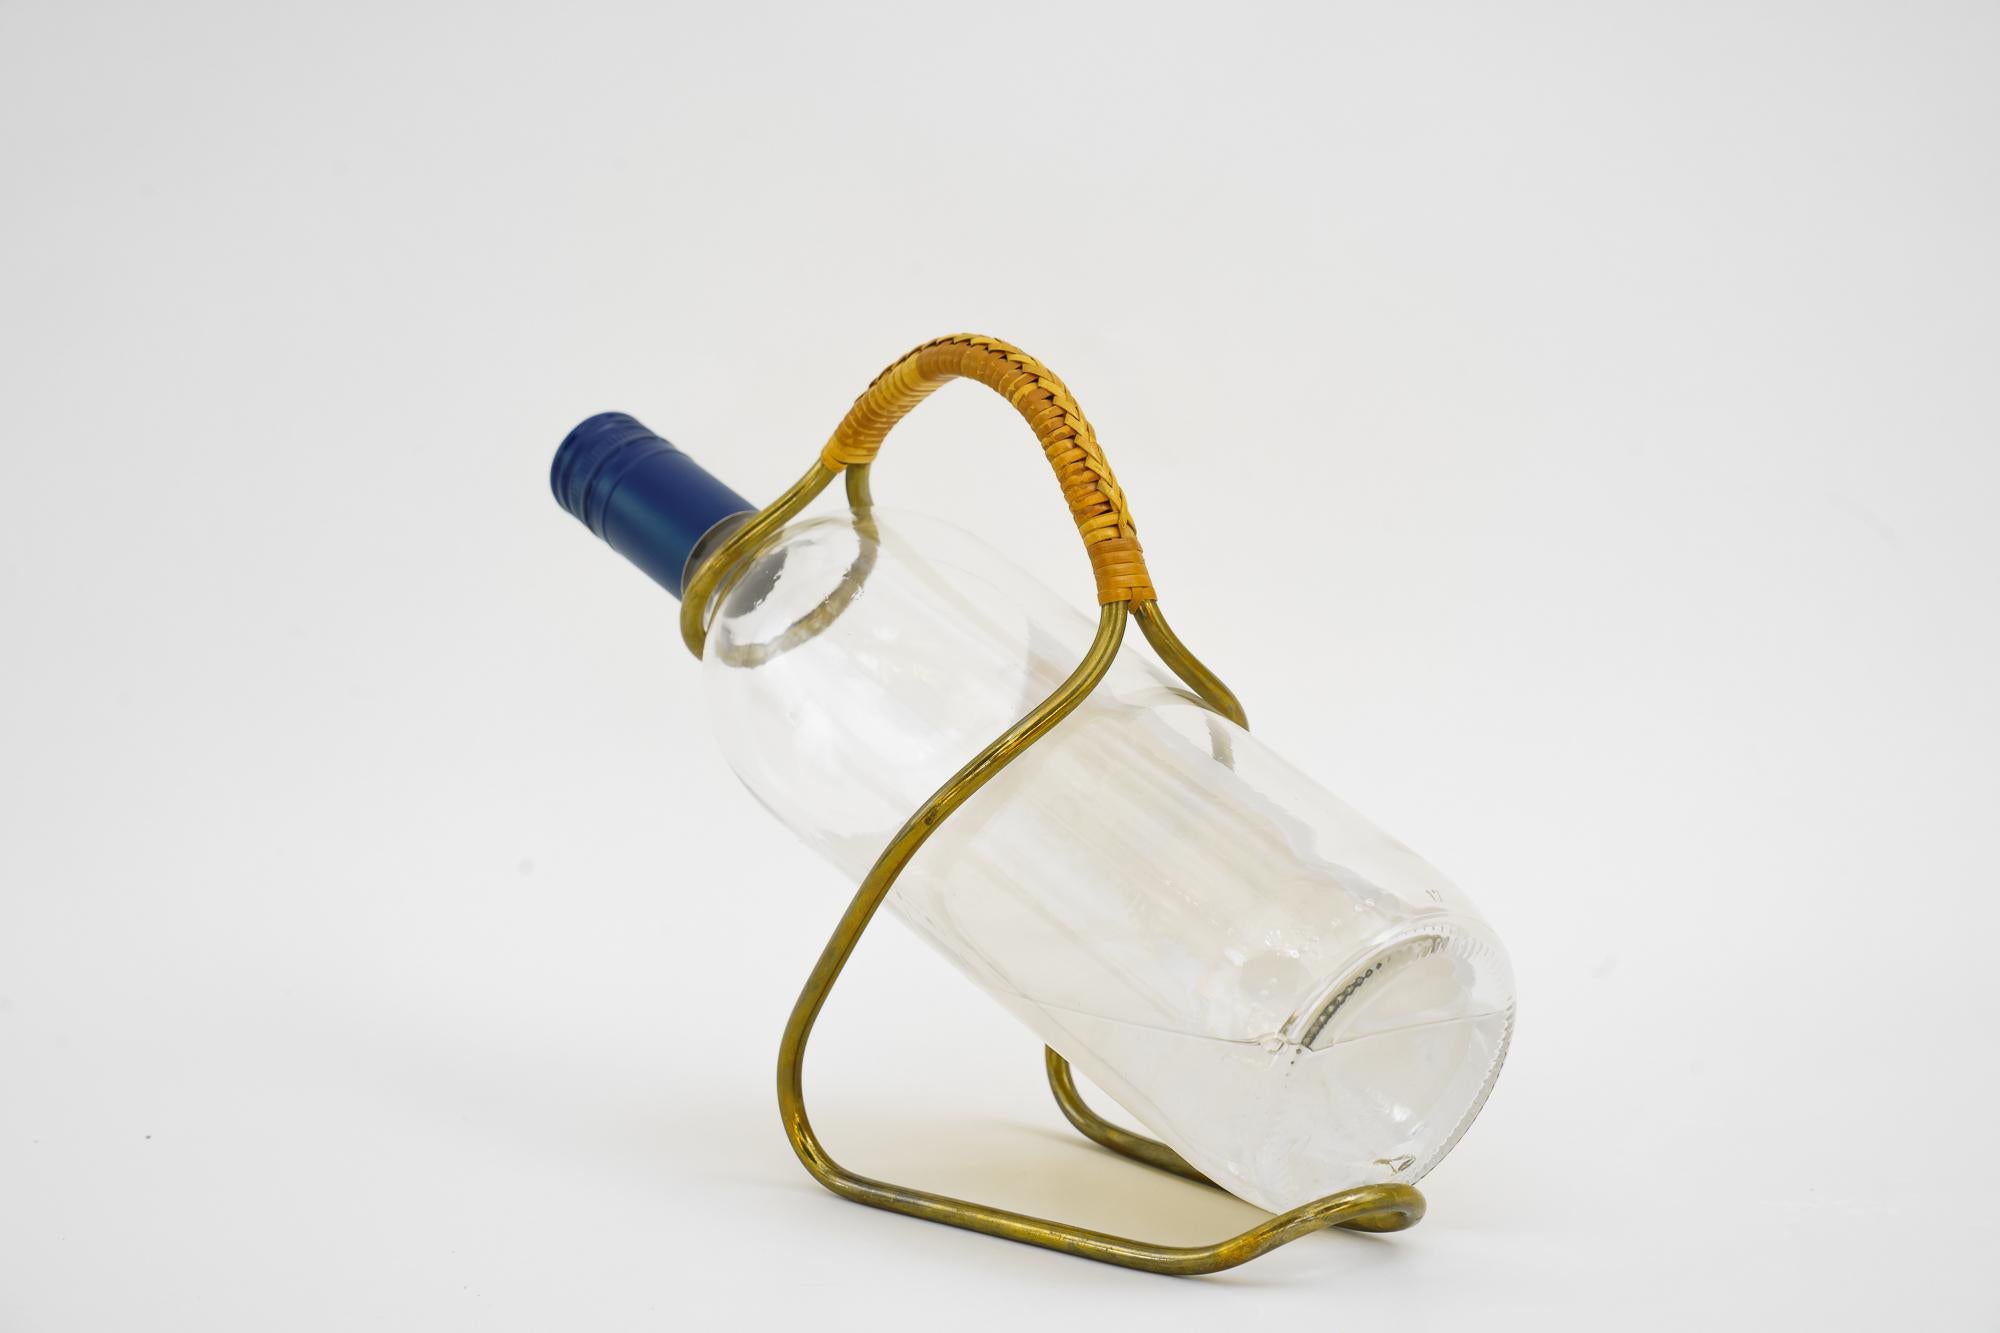 Flaschenhalter von Auböck um 1950
Ursprünglicher Zustand
Die Weinflasche ist nicht inbegriffen, sie ist nur für das Fotoshooting.